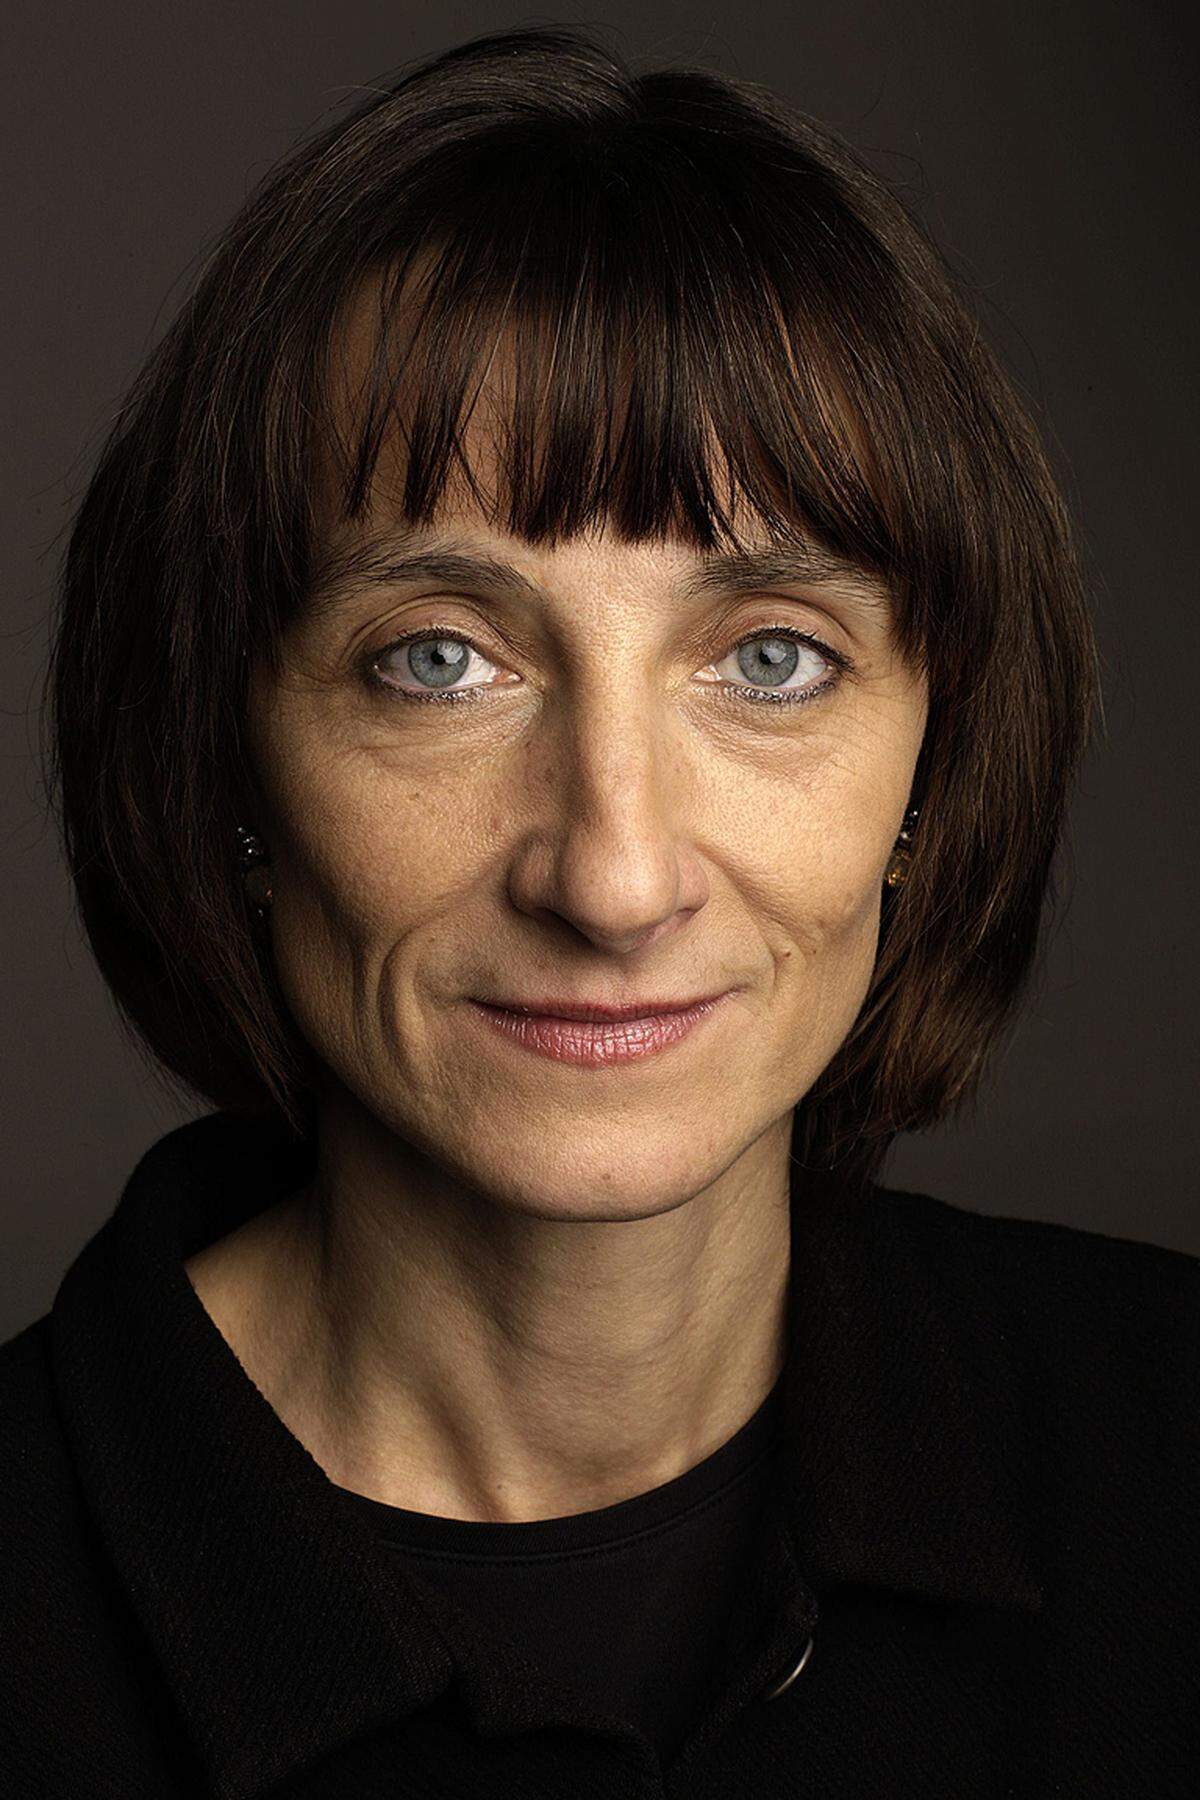 Die gebürtige Wienerin Elisabeth Sobotka ist seit 2008 Intendantin der Grazer Oper. Zuvor war sie als Operndirektorin der Berliner Staatsoper Unter den Linden engagiert.